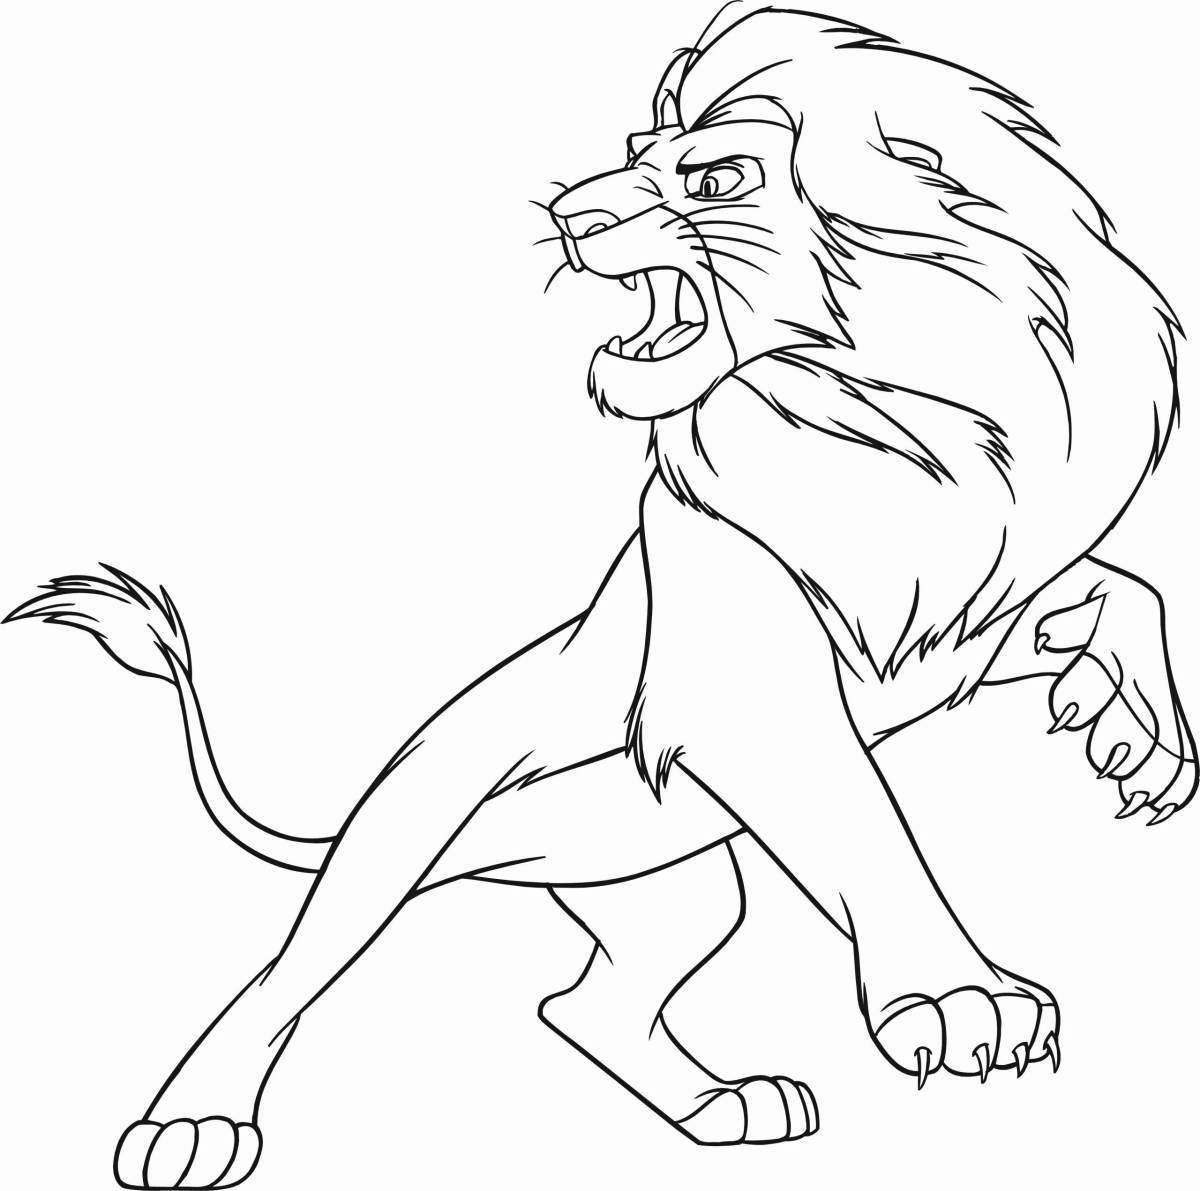 Цветущий рисунок льва